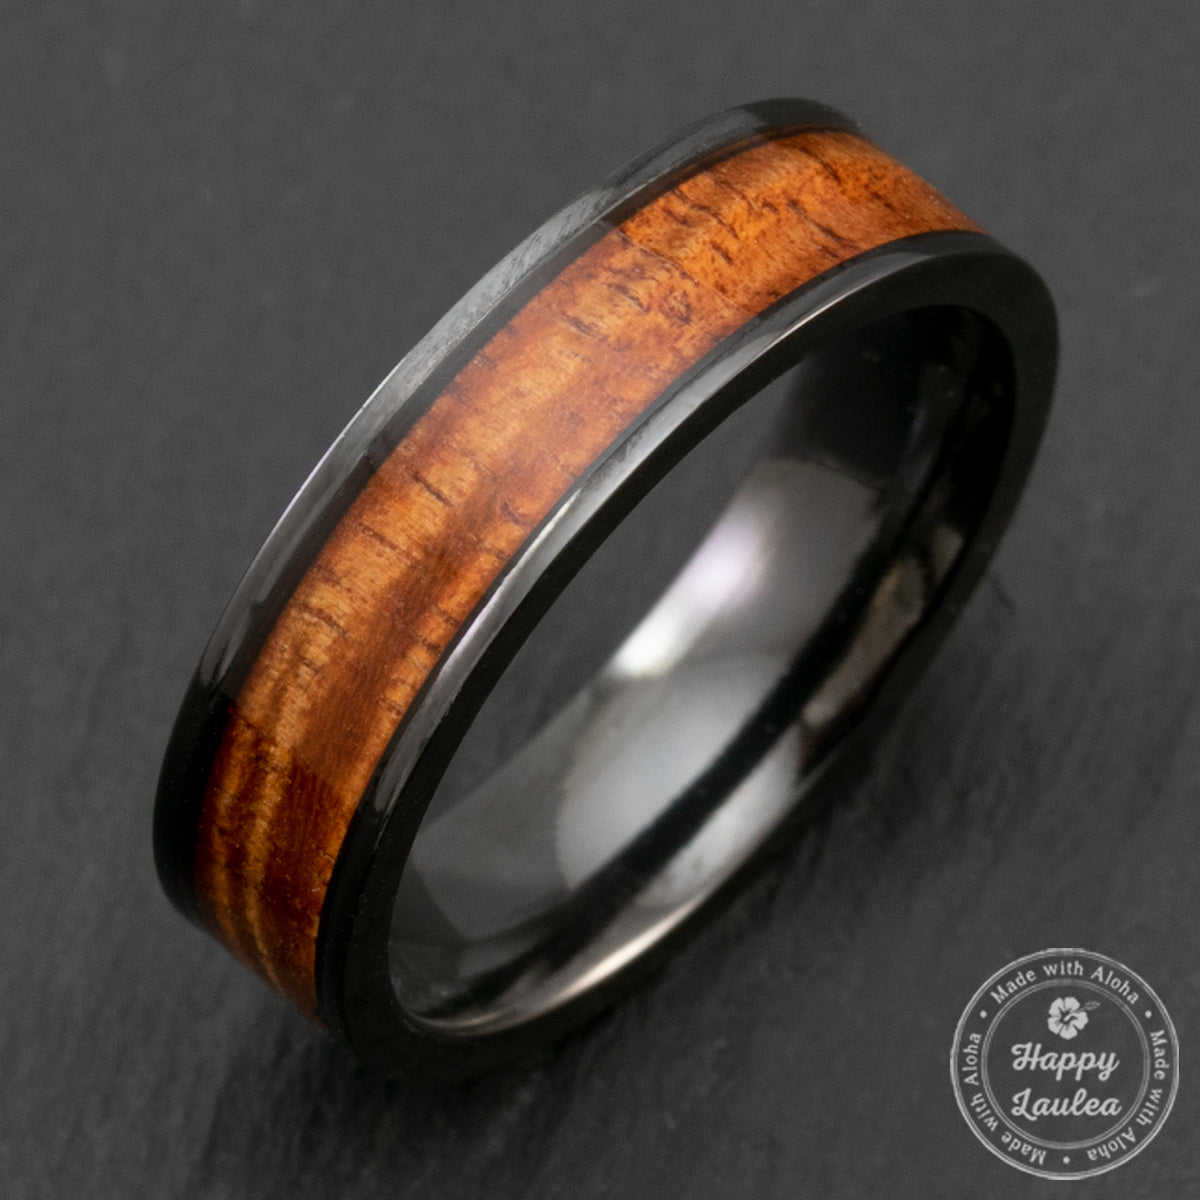 Black Zirconium 6mm Ring with Hawaiian Koa Wood Inlay - Flat Shape, Comfort Fitment